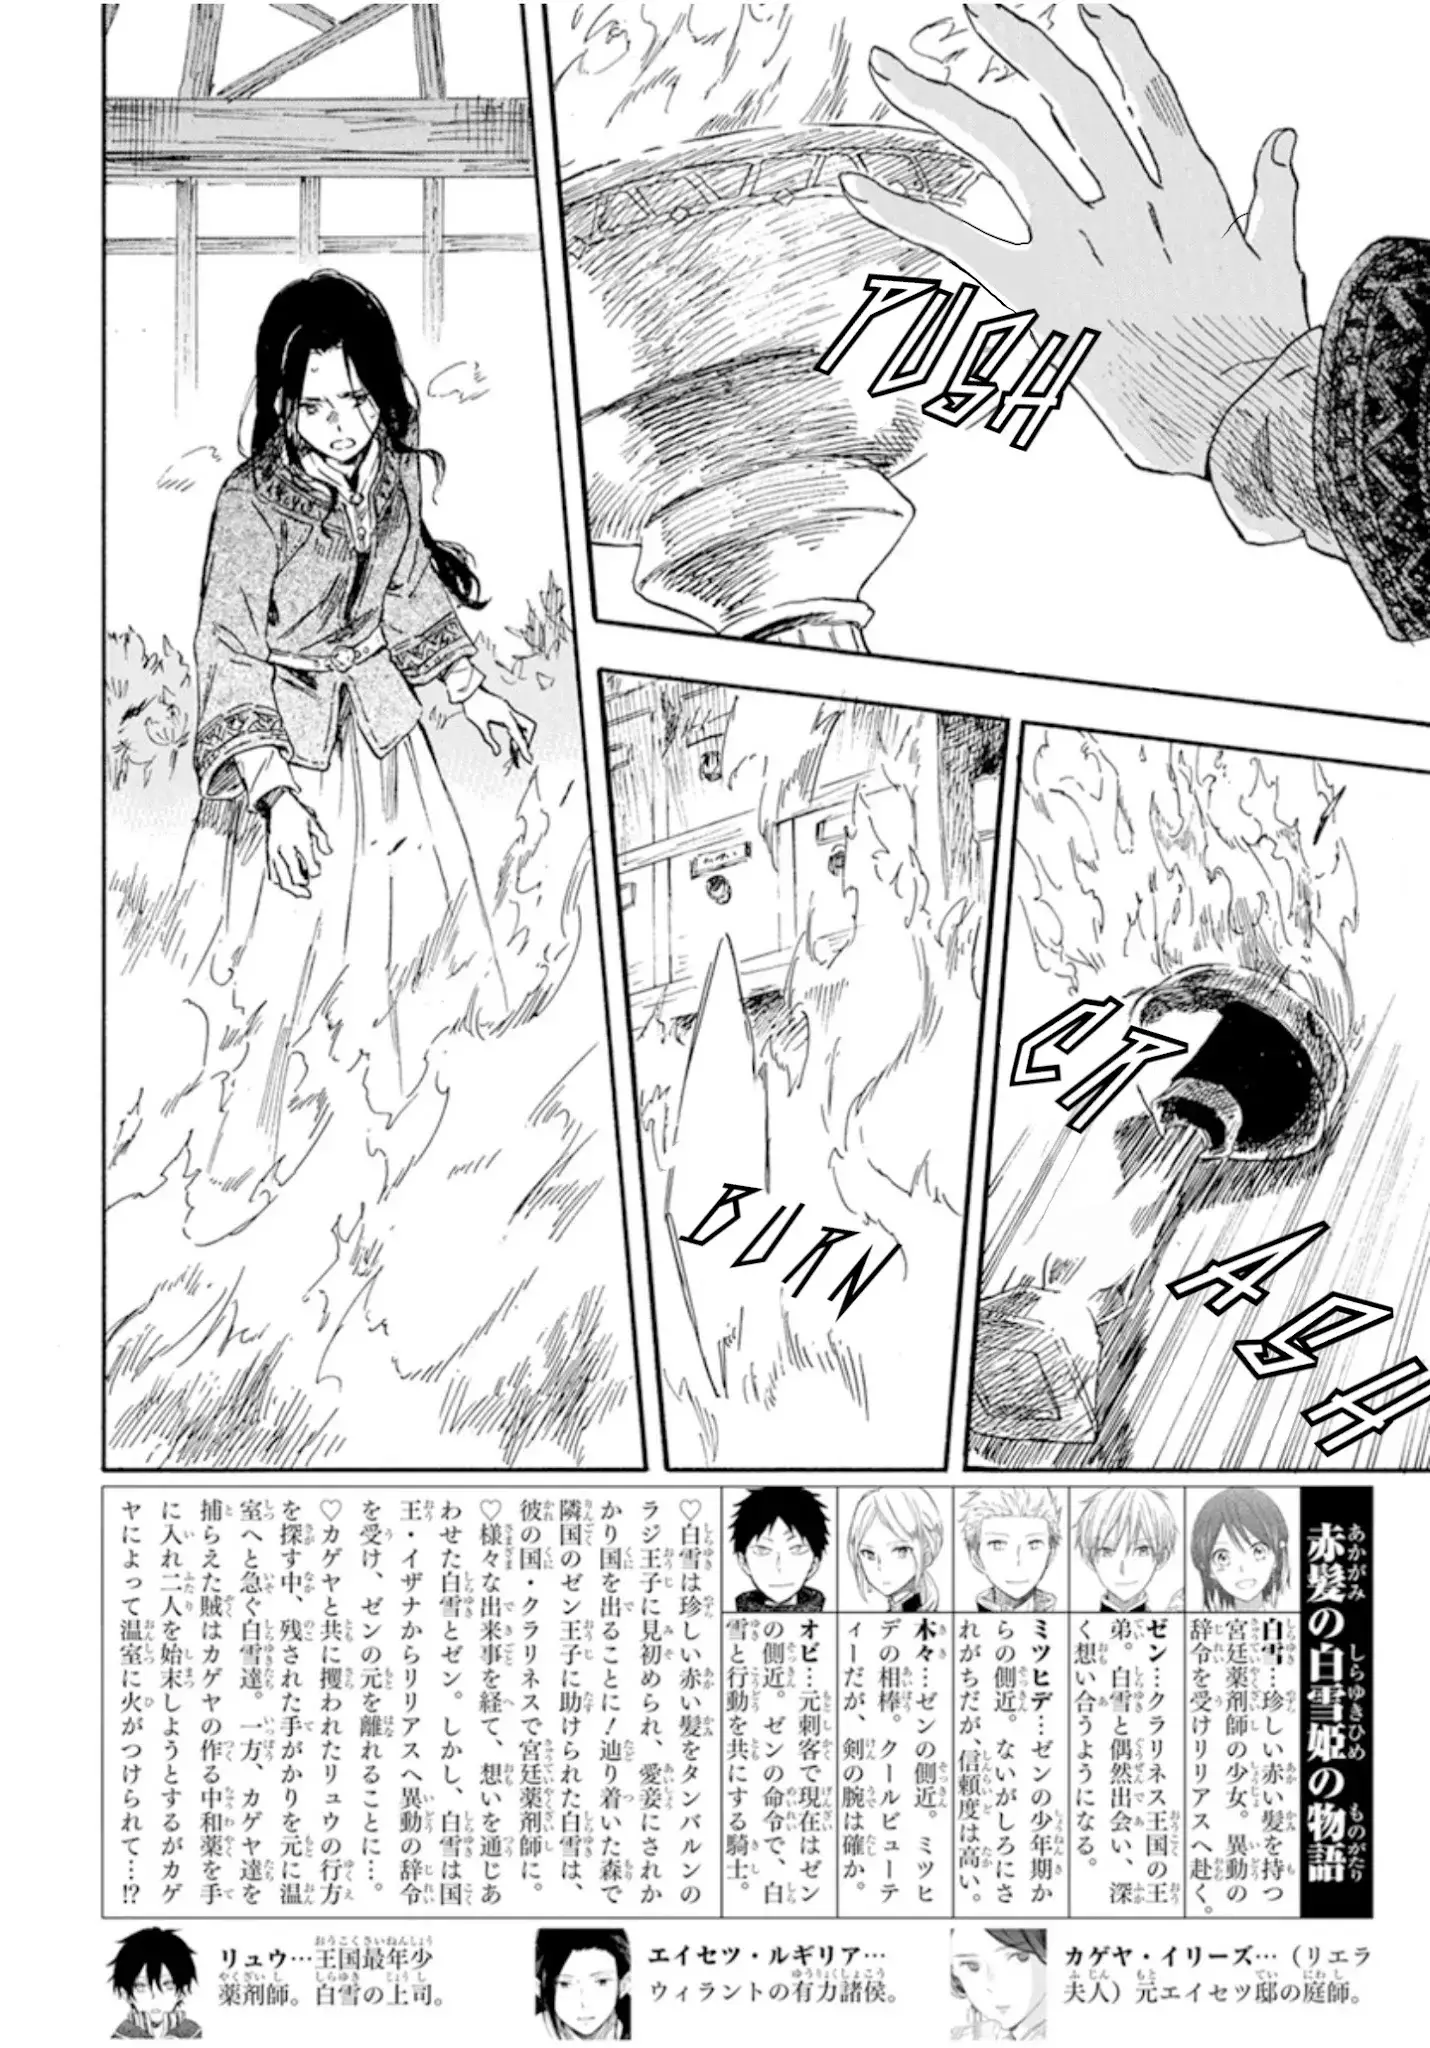 Akagami no Shirayukihime - 125 page 2